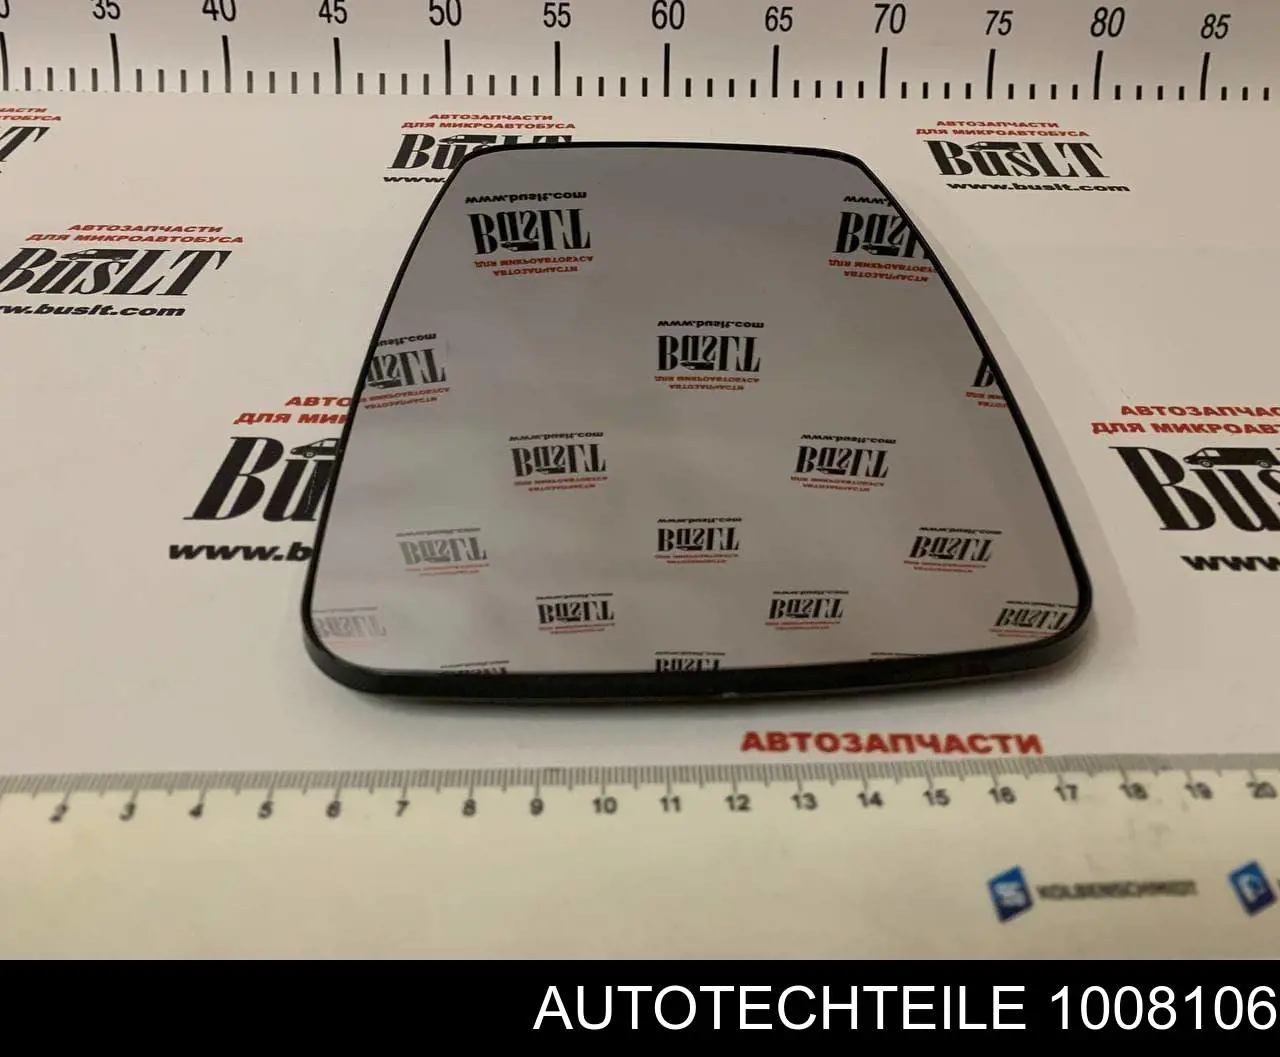 100 8106 Autotechteile elemento espelhado do espelho de retrovisão esquerdo